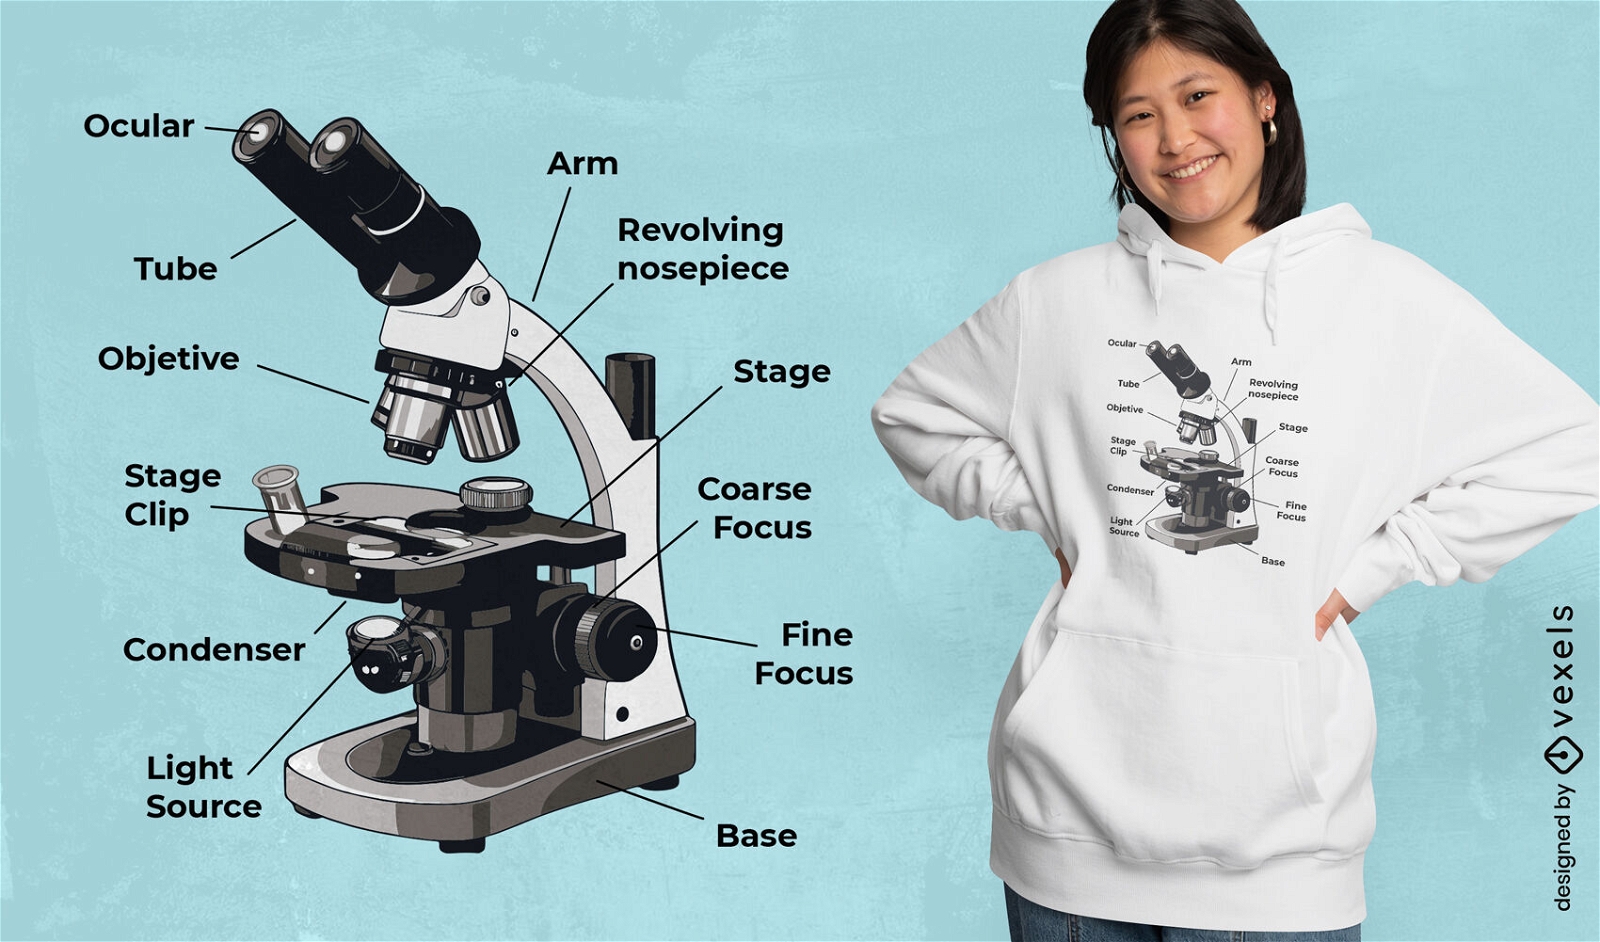 Partes de un dise?o de camiseta de microscopio.